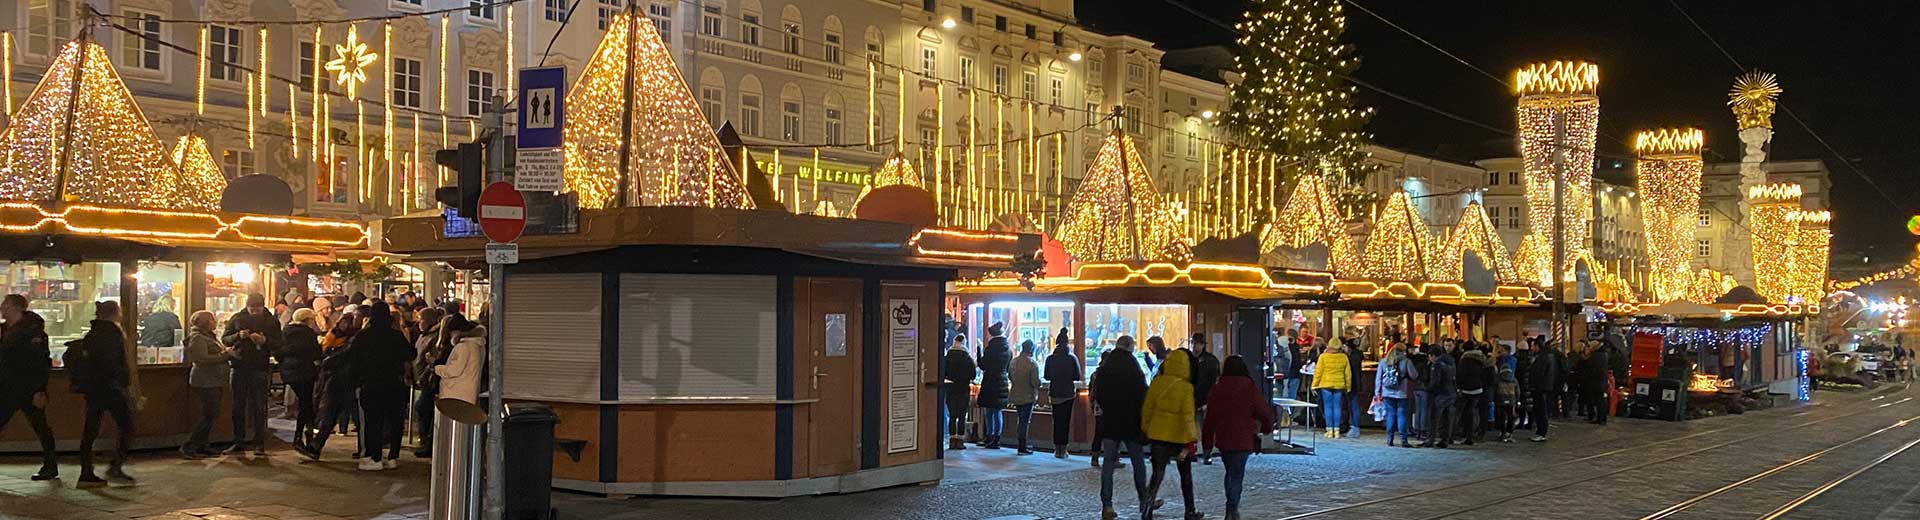 Geiger CEX Stadtrundfahrt Linz Weihnachtsstimmung